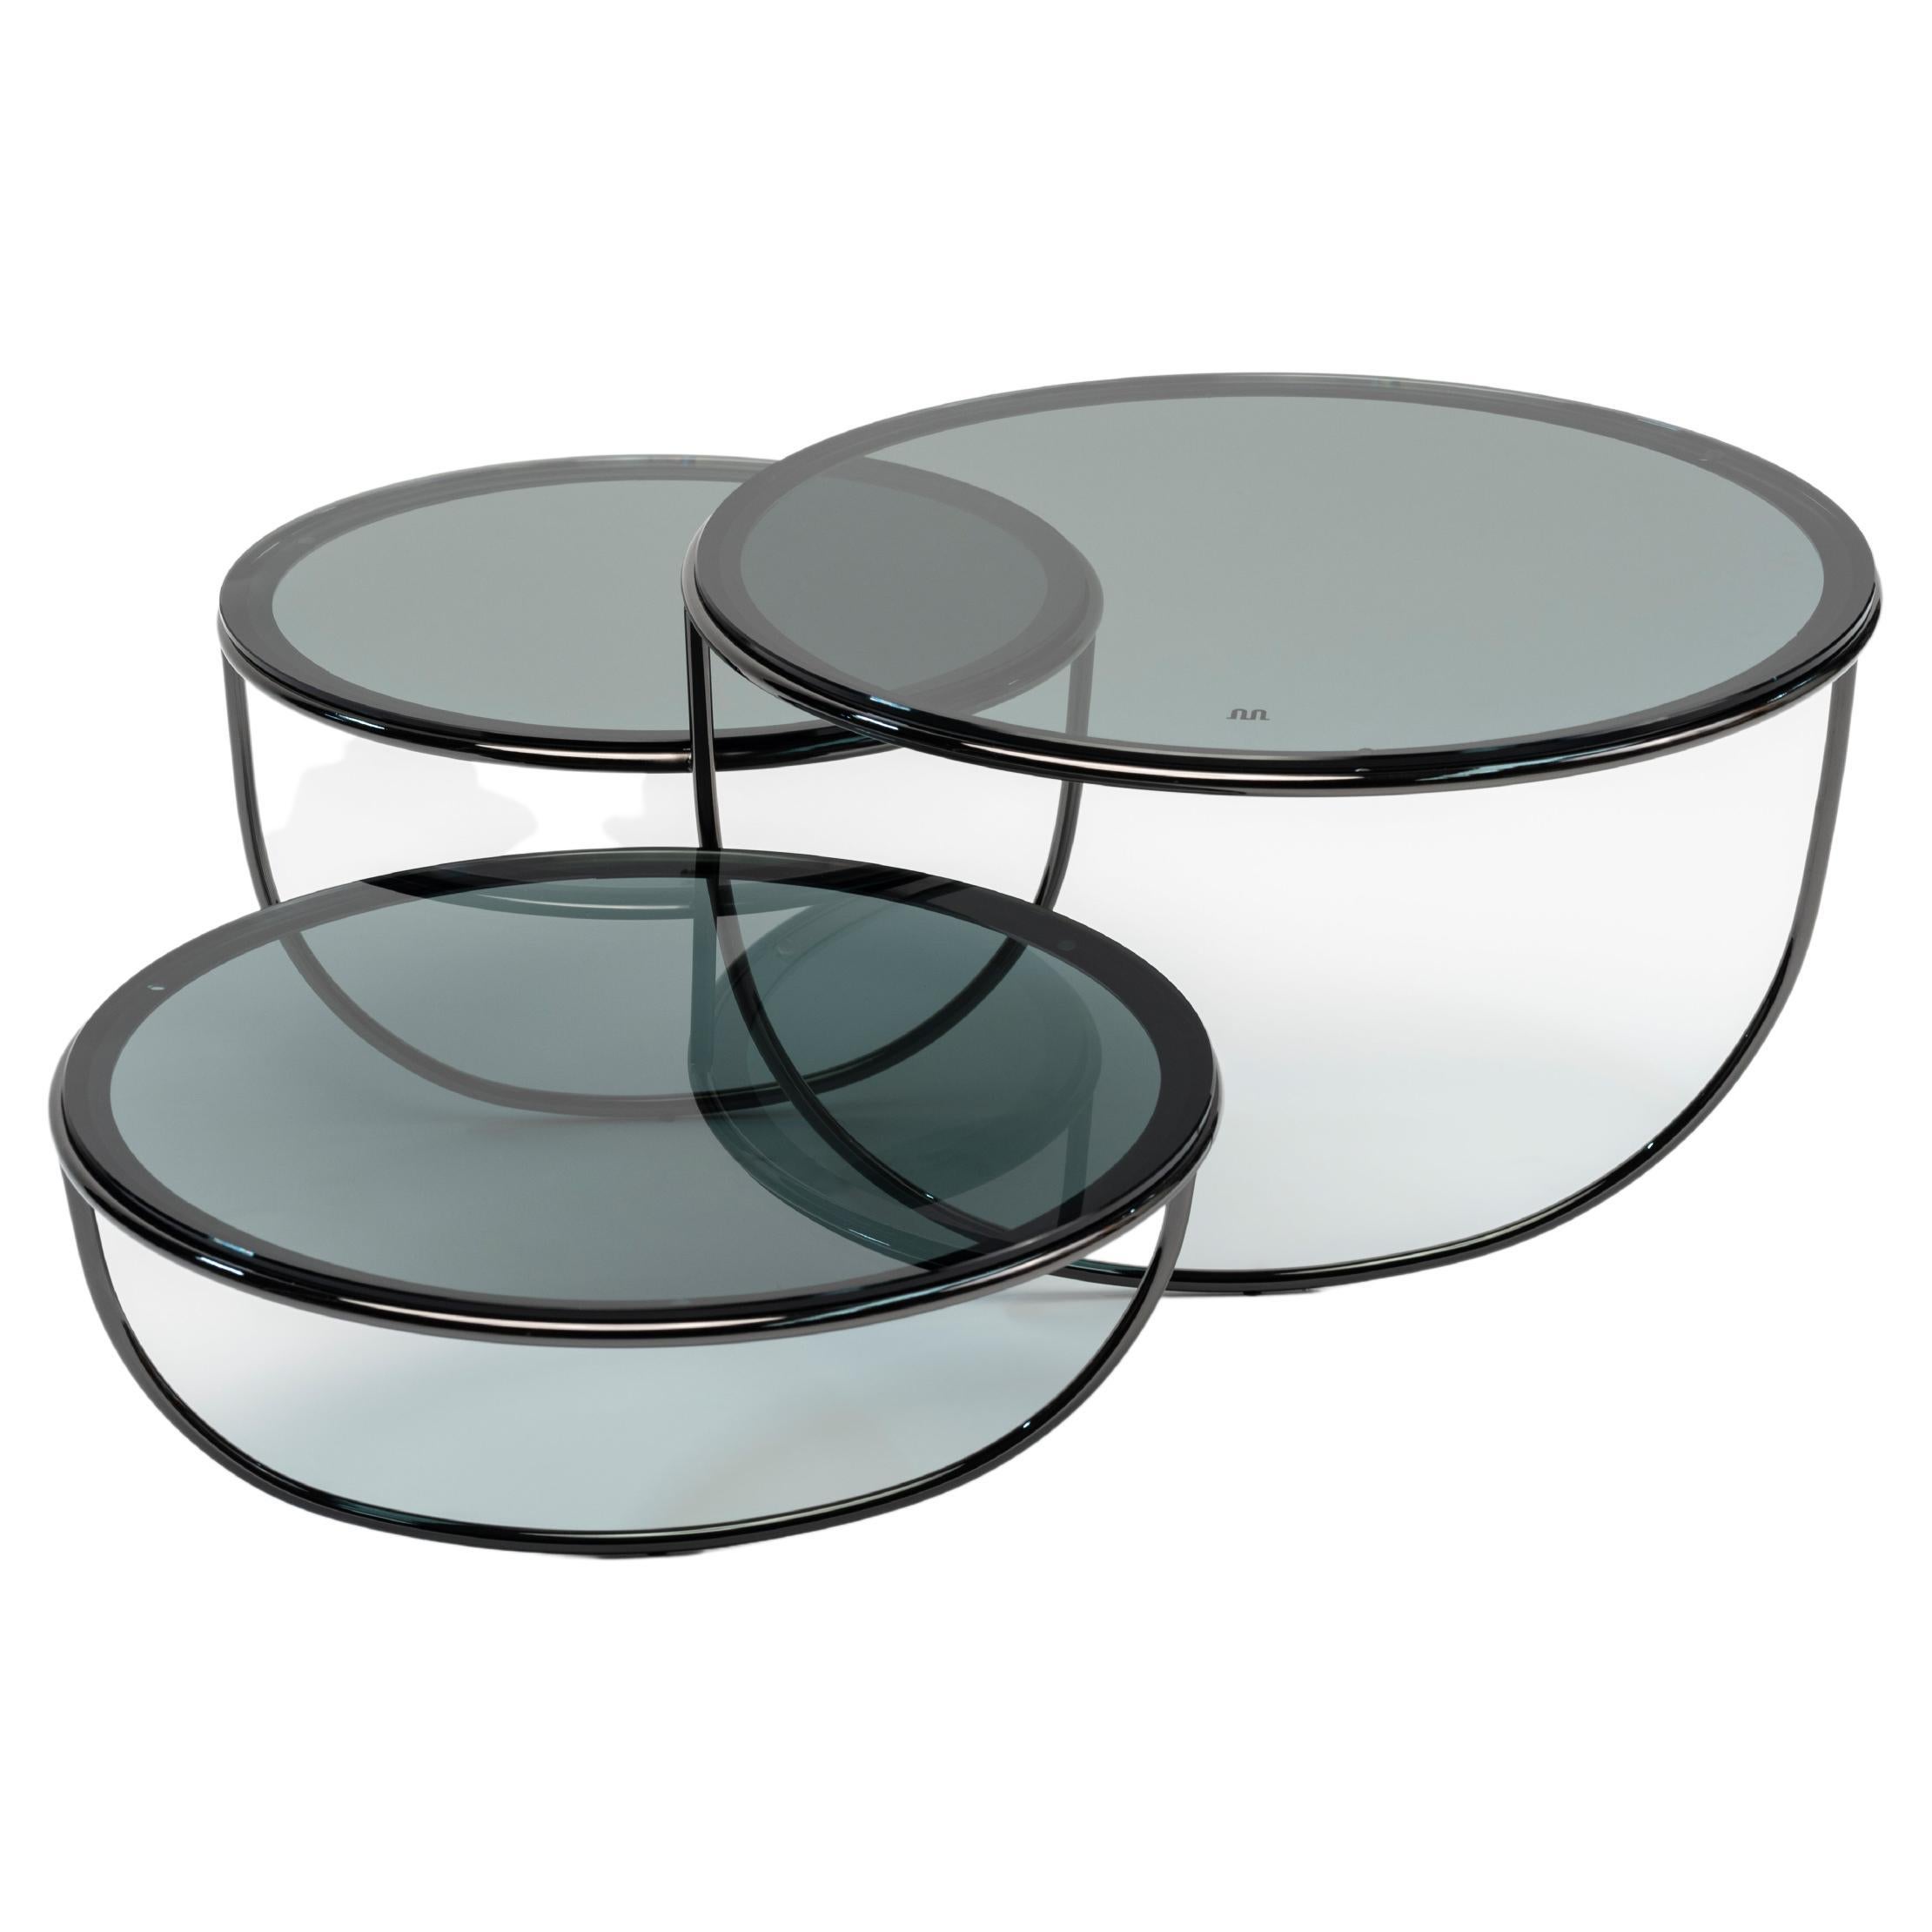 À première vue, Trio est une table d'appoint composée de trois bols transparents qui se chevauchent.
L'ouverture de chaque bol est recouverte d'un plateau en verre, en métal ou en bois. La forme du bol est suggérée par une seule ligne courbe - un